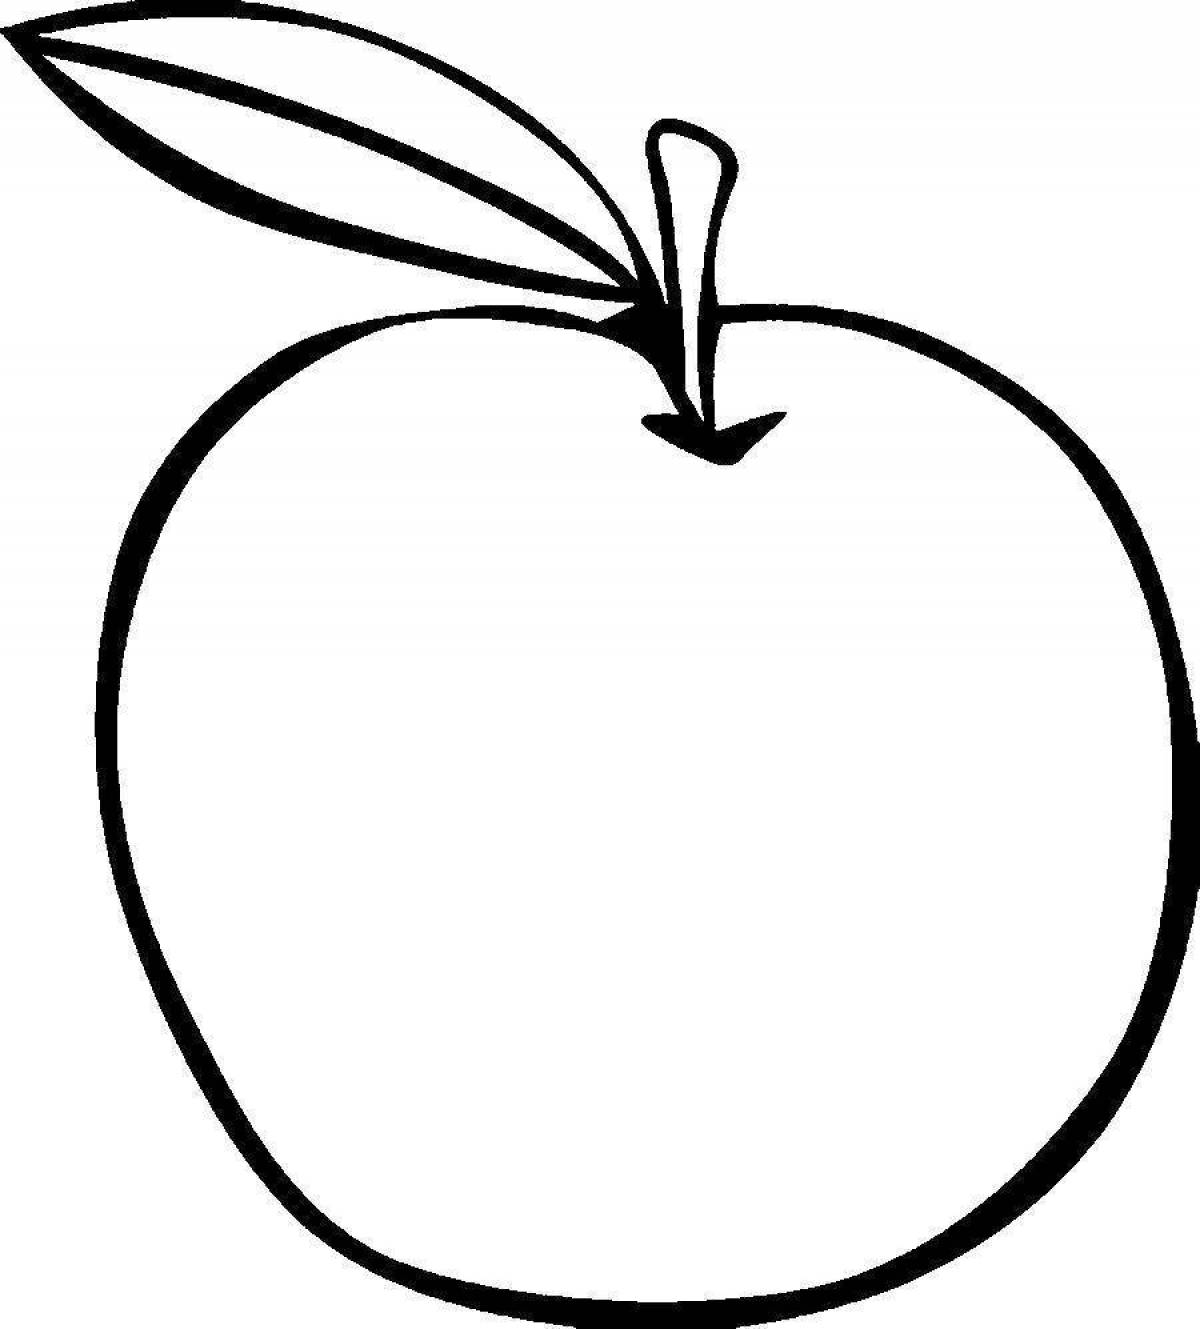 Fancy drawing of an apple